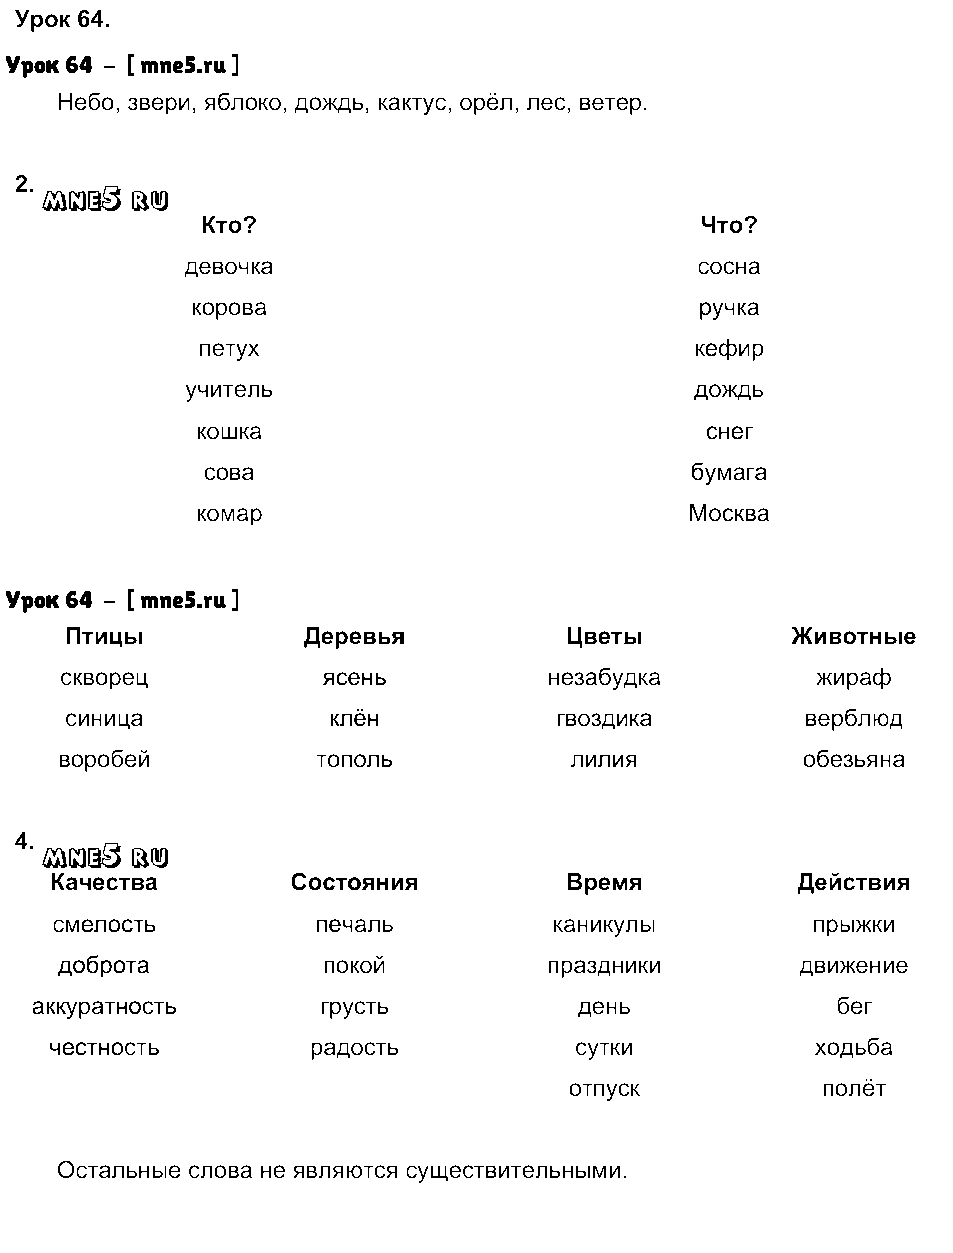 ГДЗ Русский язык 3 класс - Урок 64